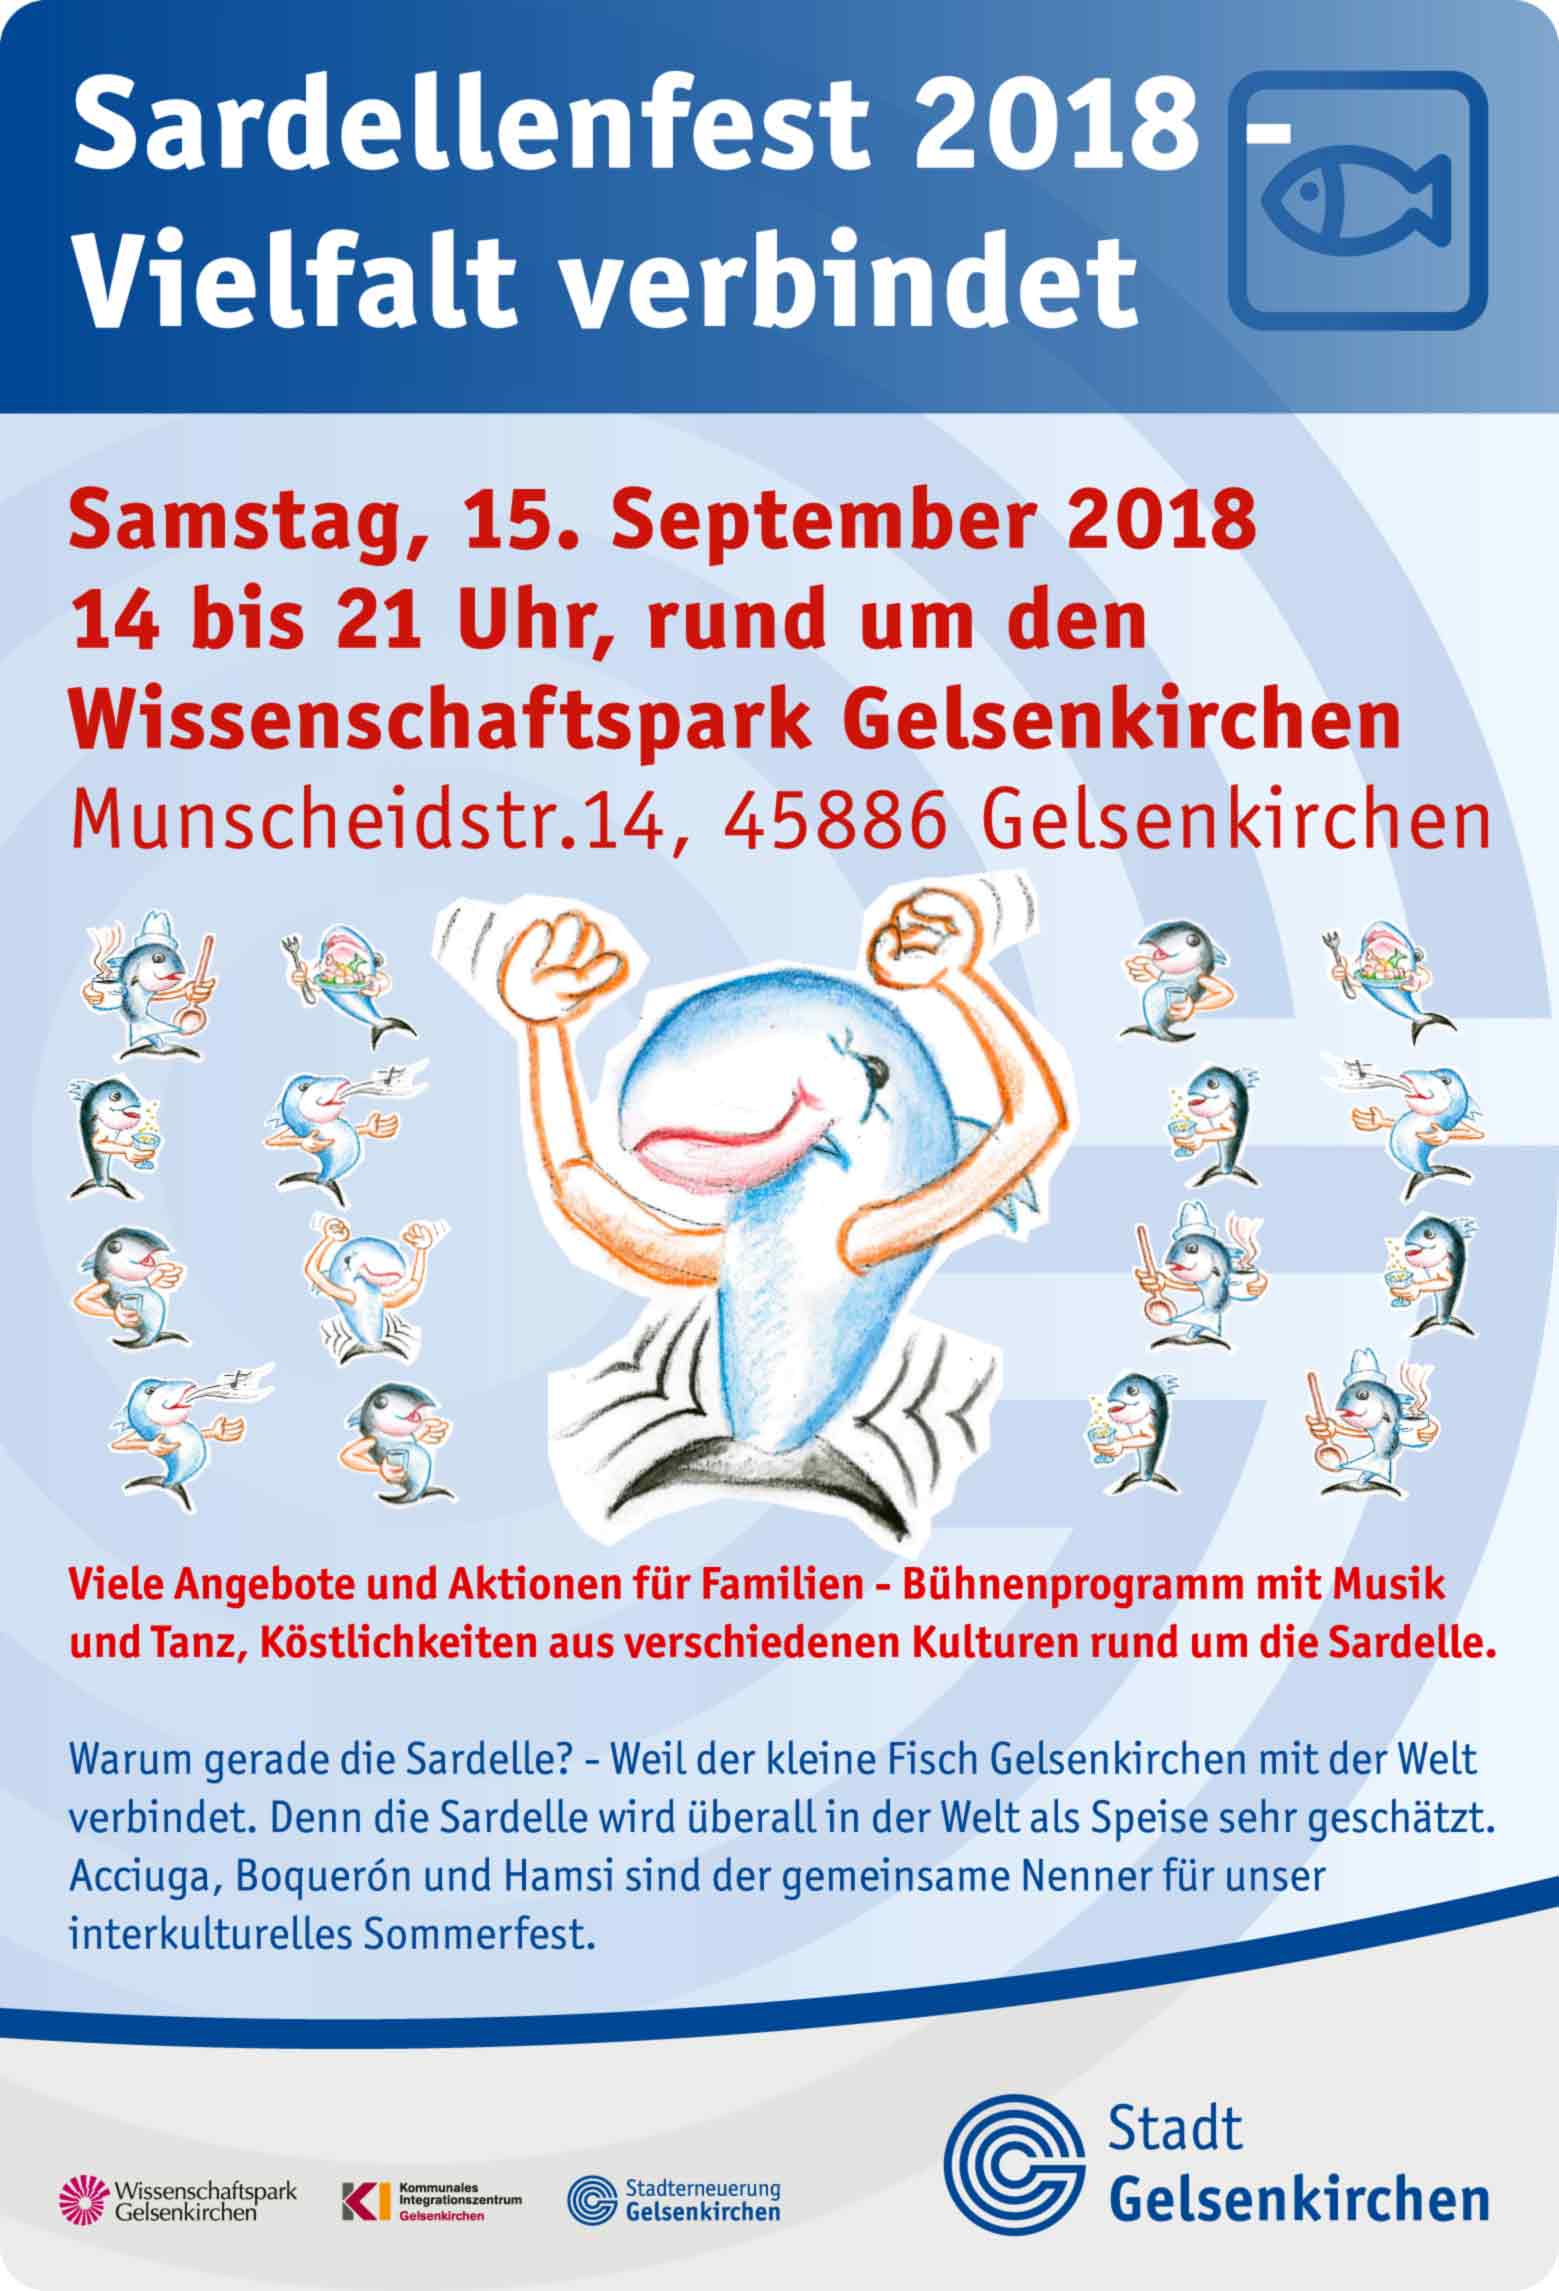 Plakat: Infos und Daten zum Sardellenfest 2018.